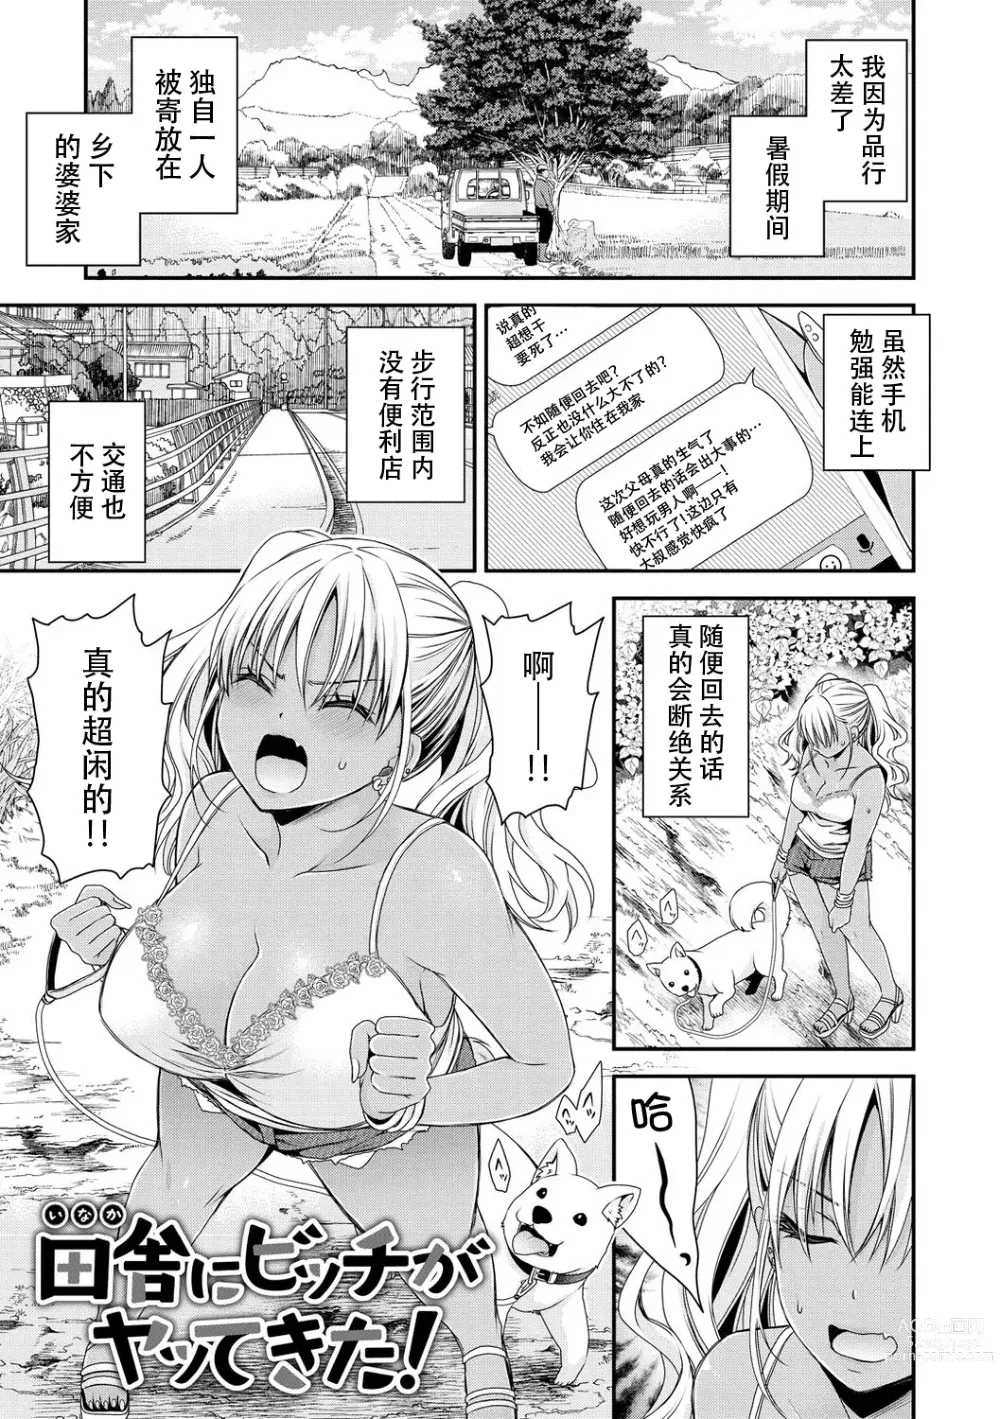 Page 1 of manga Inaka ni Bitch ga Yattekita! + Inaka ni Bitch ga Yattekita! Returns {Watashi No Tondemo Shotaiken)